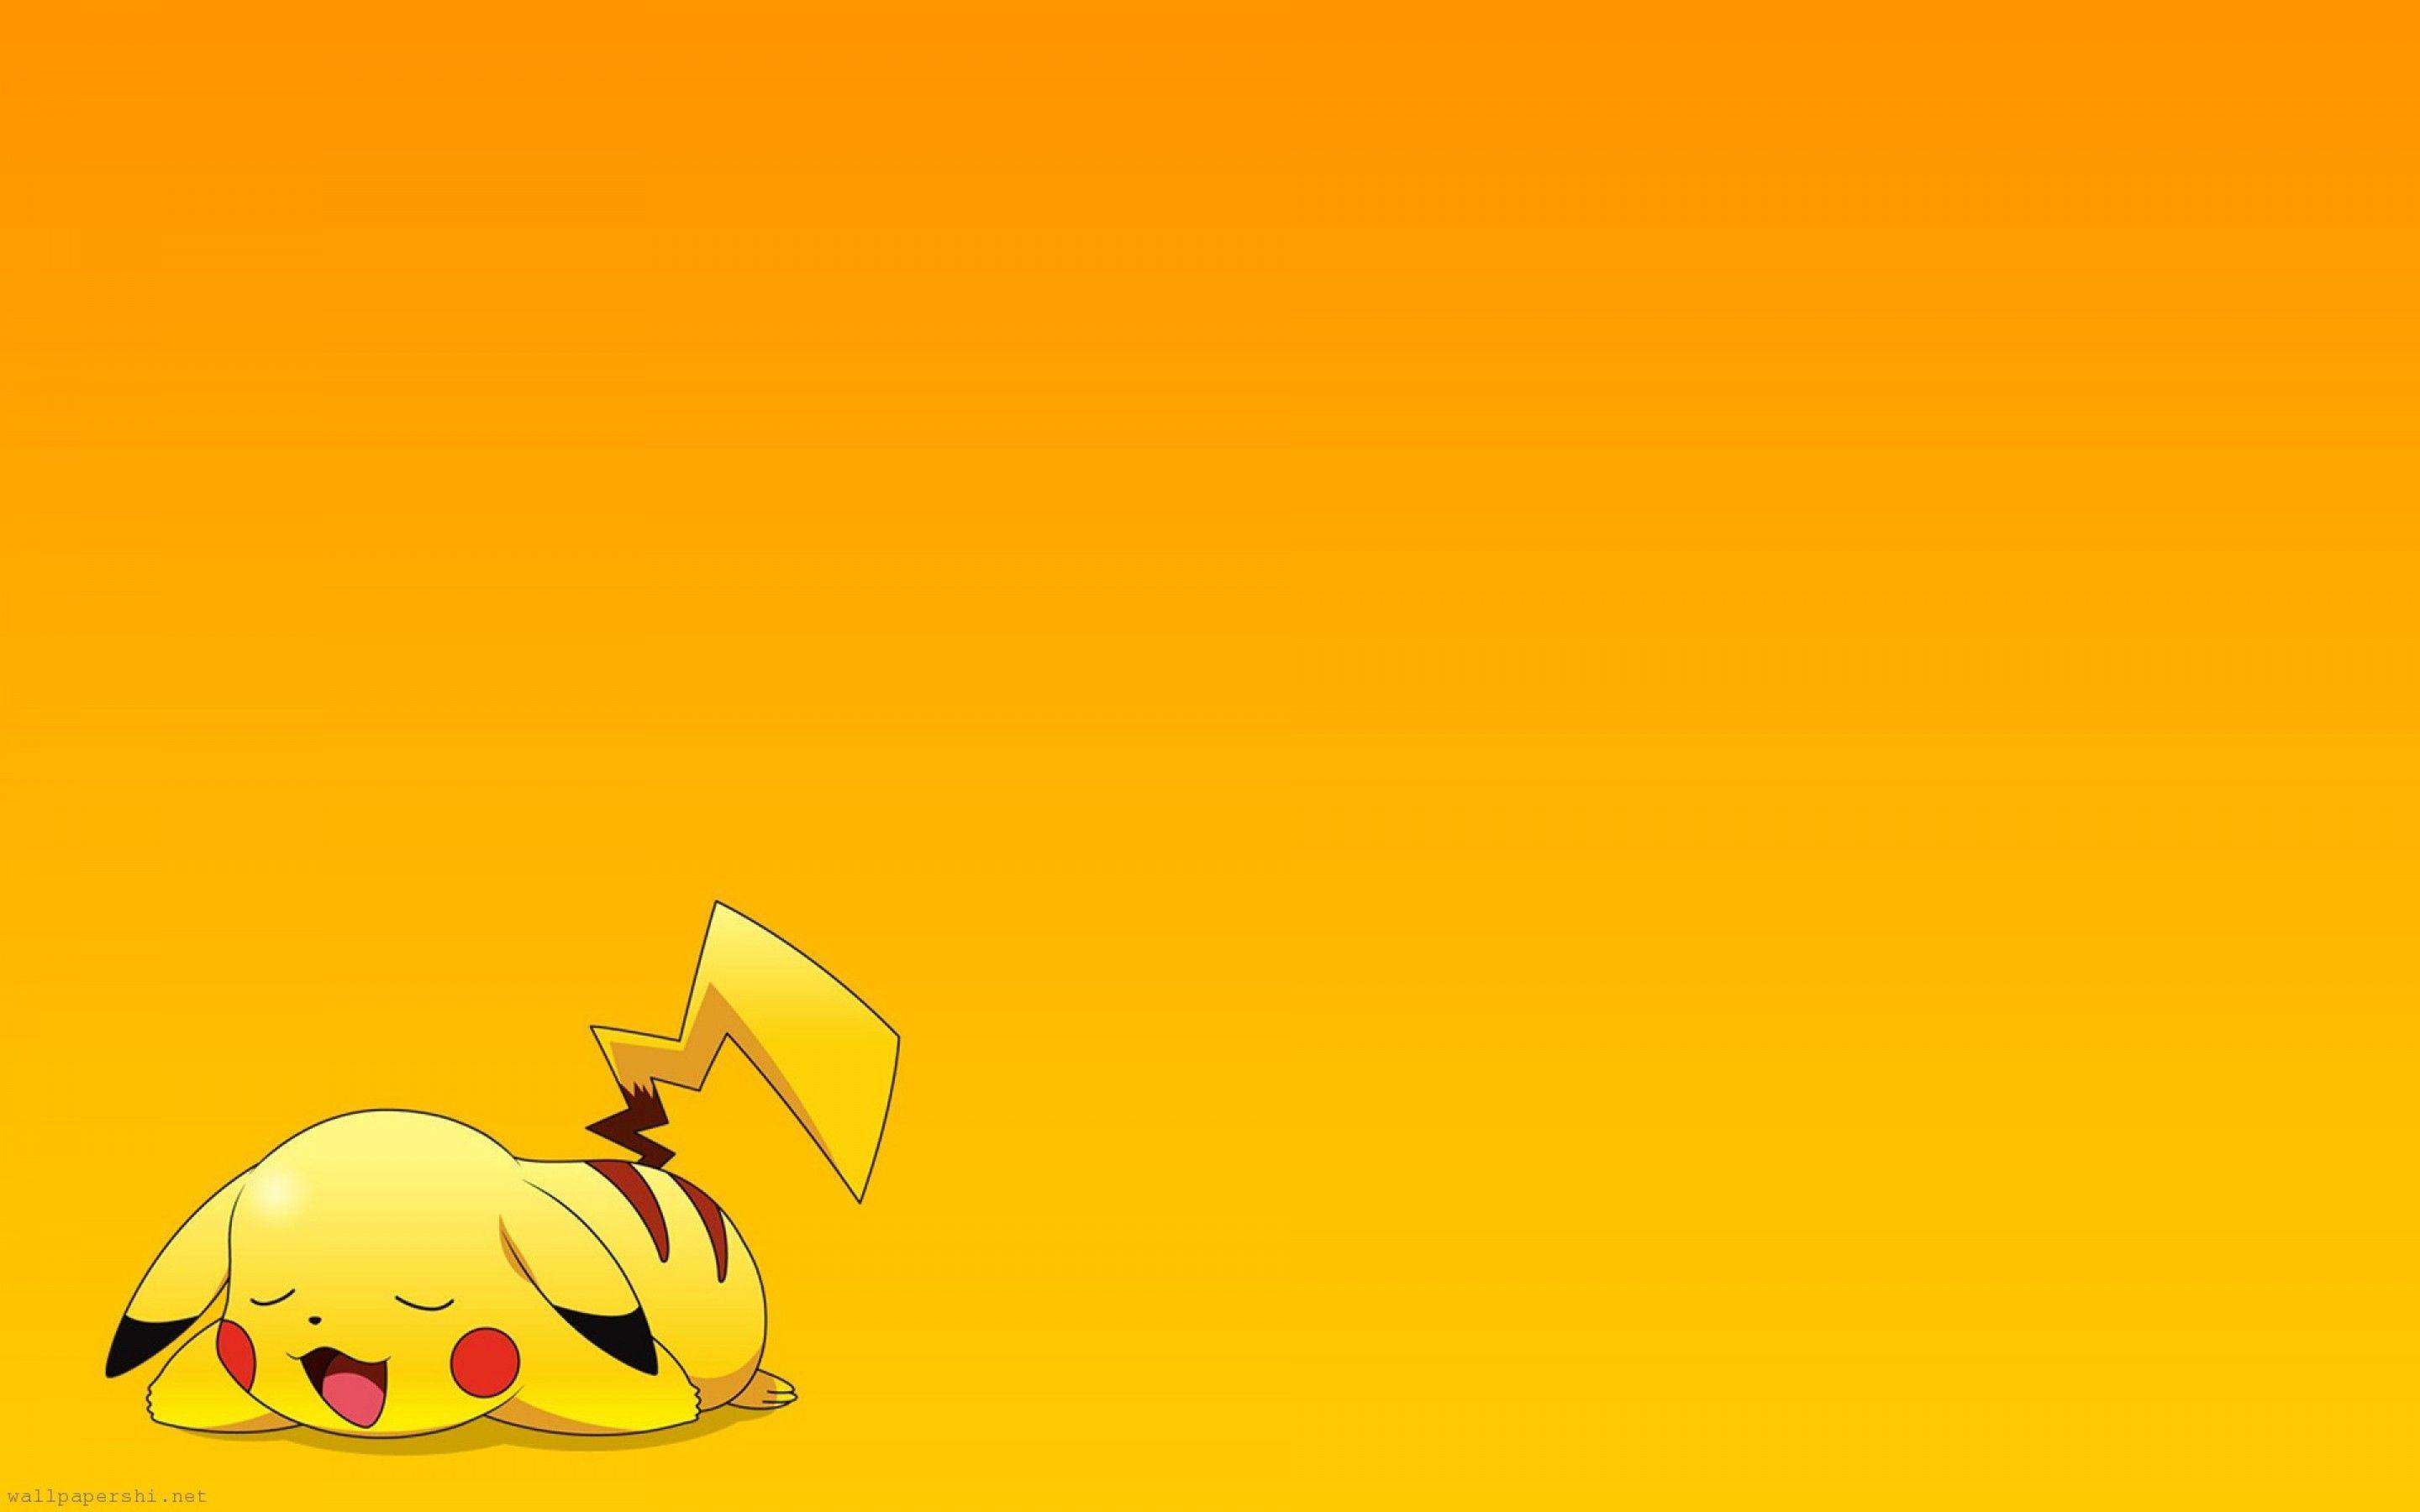 Pokemon Pikachu Wallpaper HD wallpaper search. Wallpaper